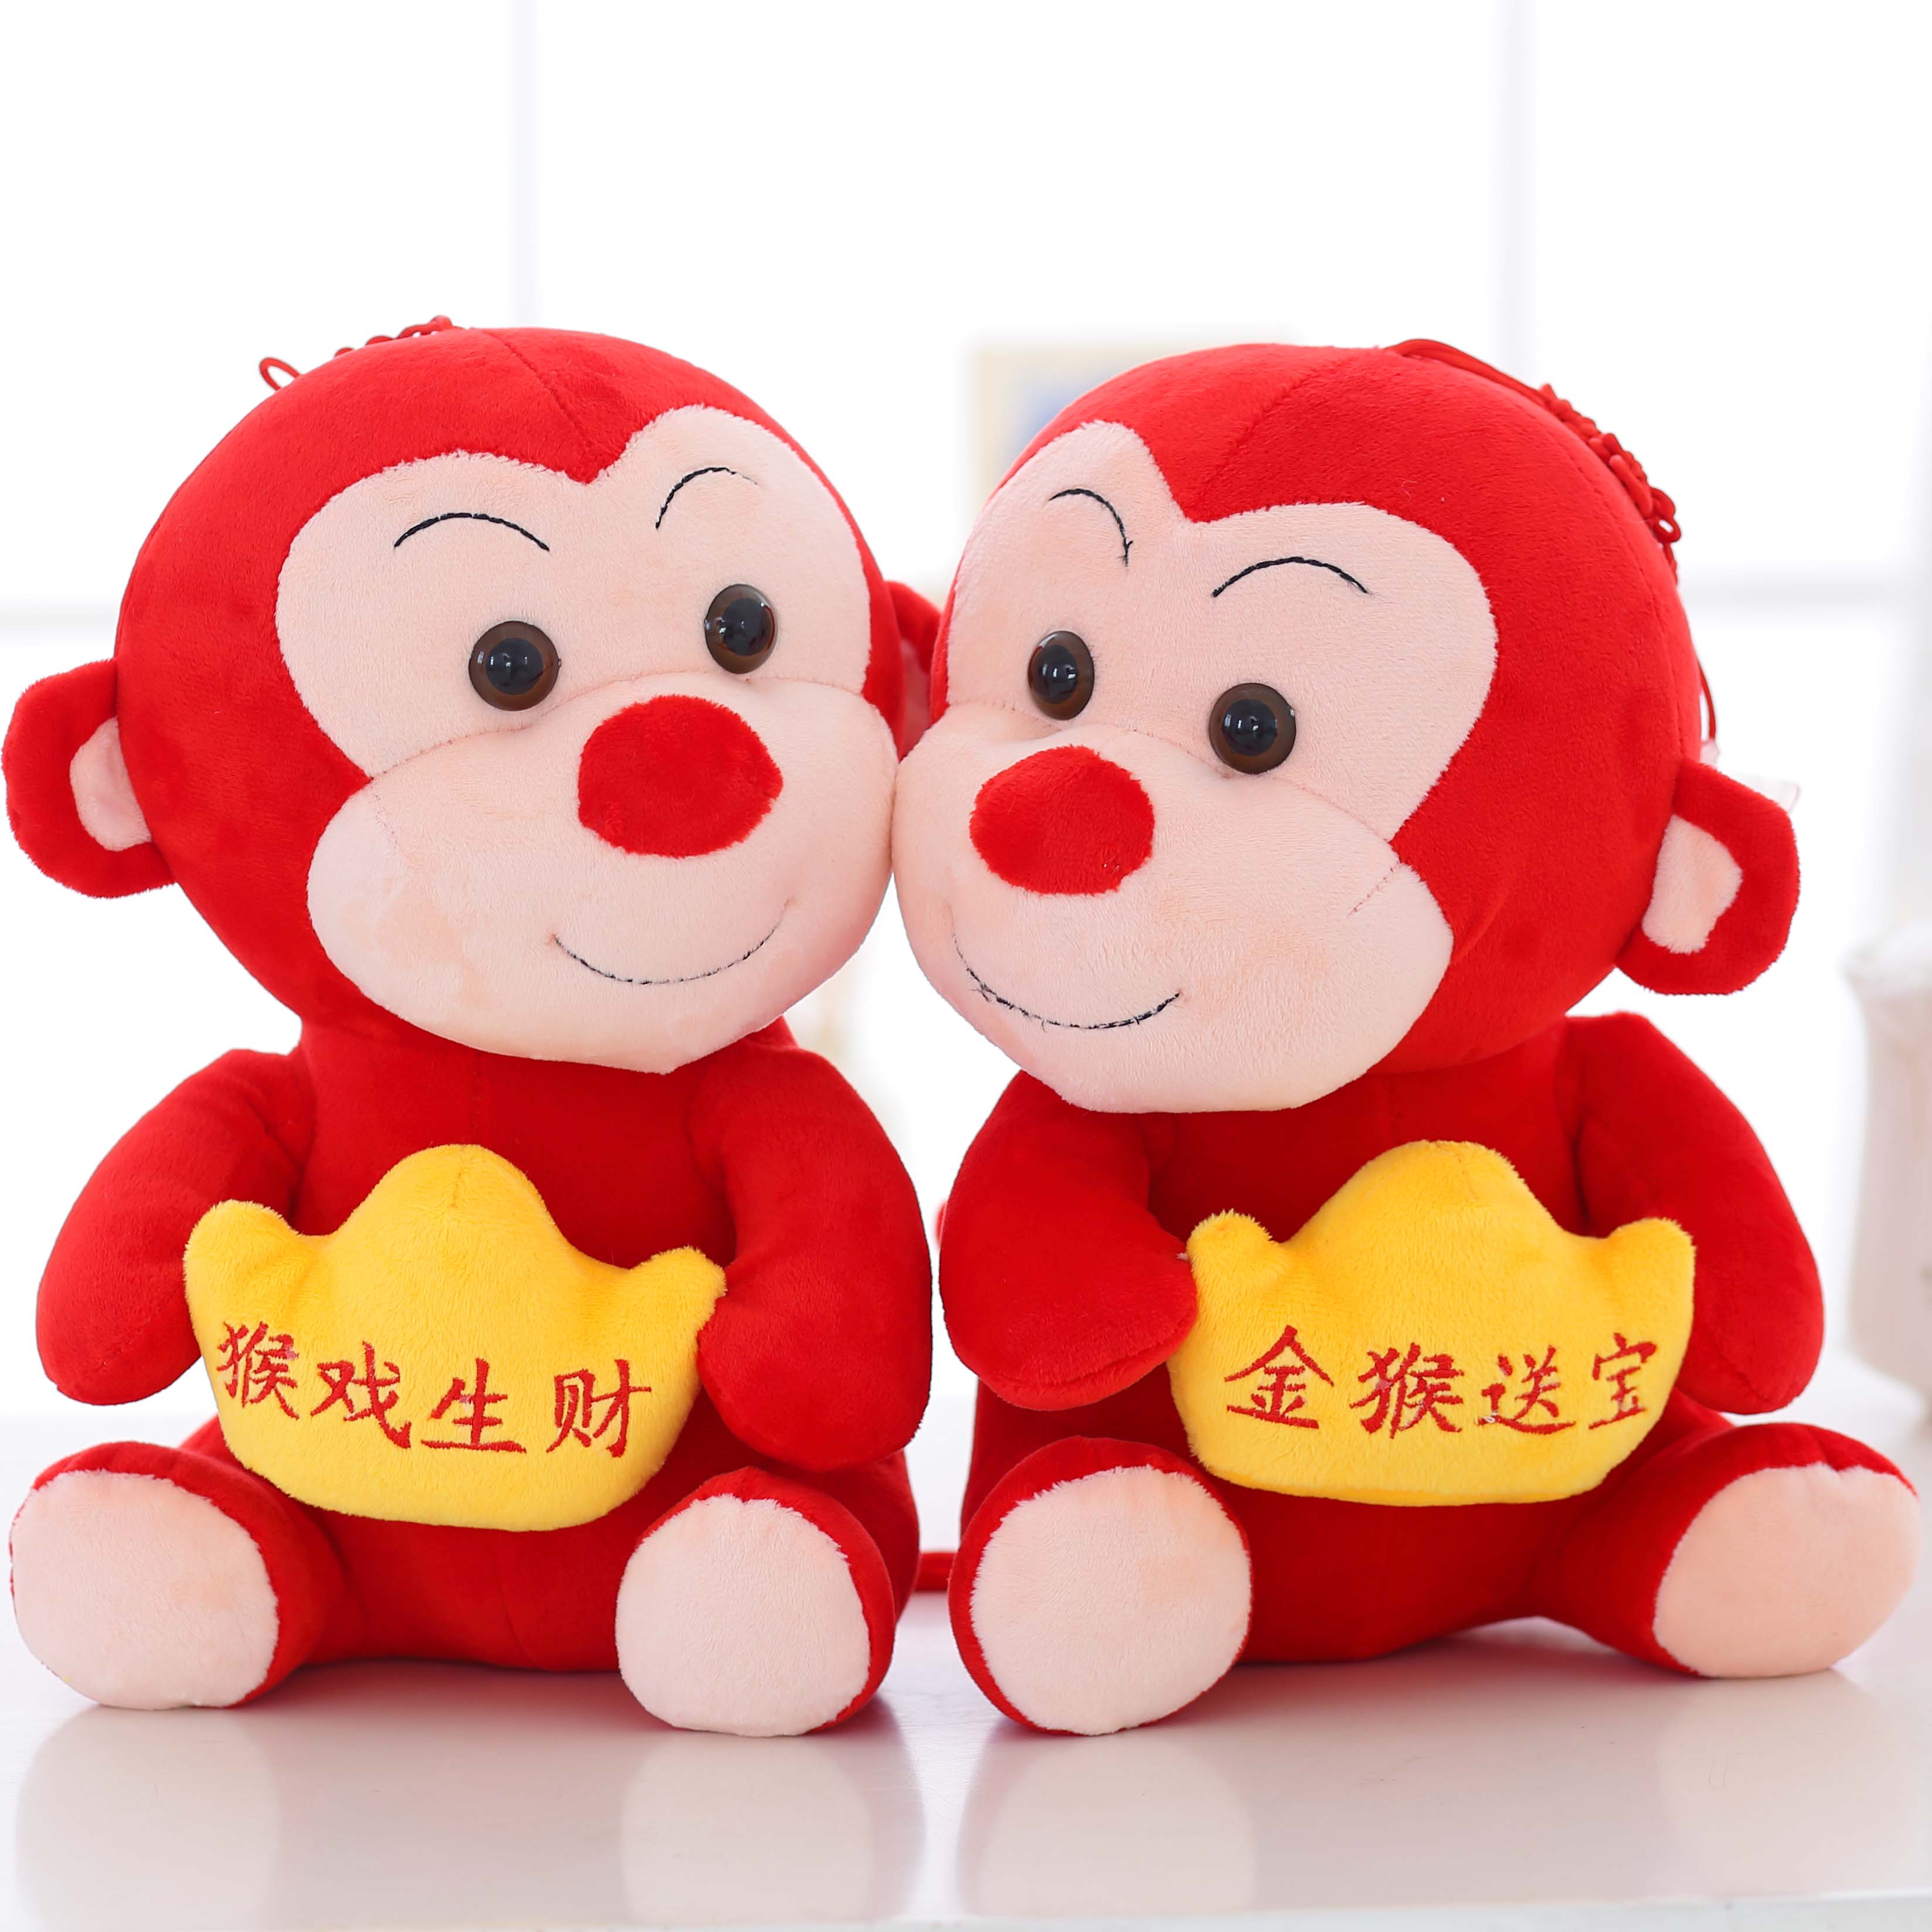 猴子毛绒玩具小猴子批发 年会礼品 公司活动生肖猴年吉祥物发财猴折扣优惠信息